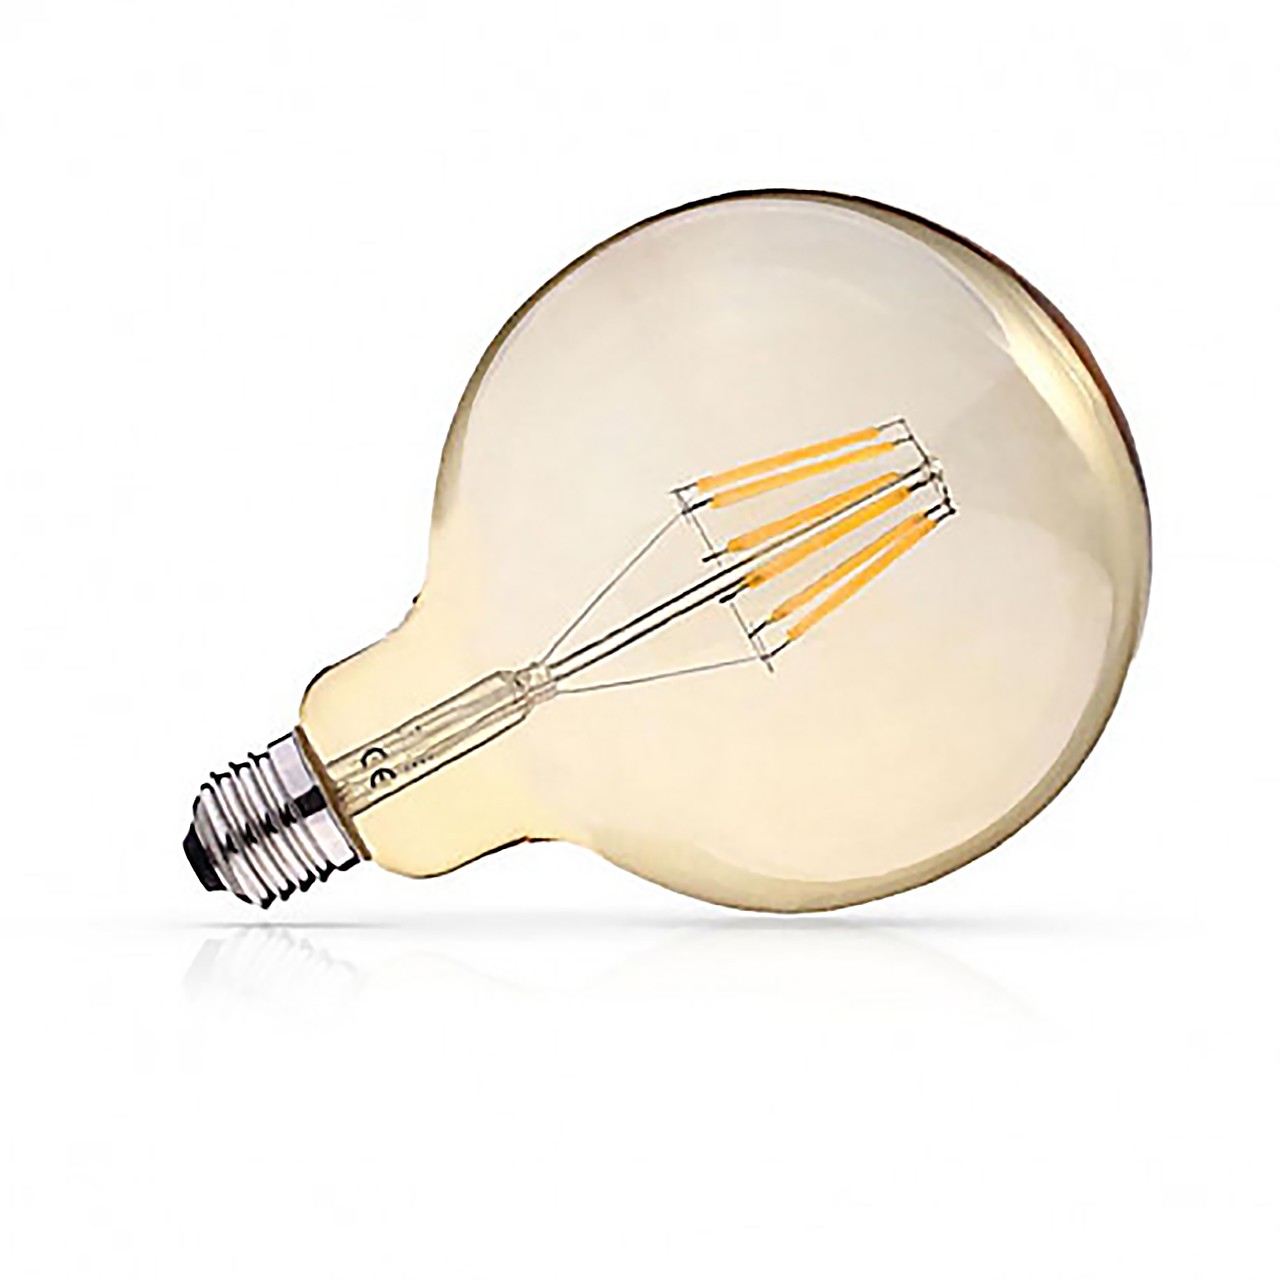 Ampoule LED E27 - G125 Filament spirale - Golden - 4W 2700k - PACALED SAS